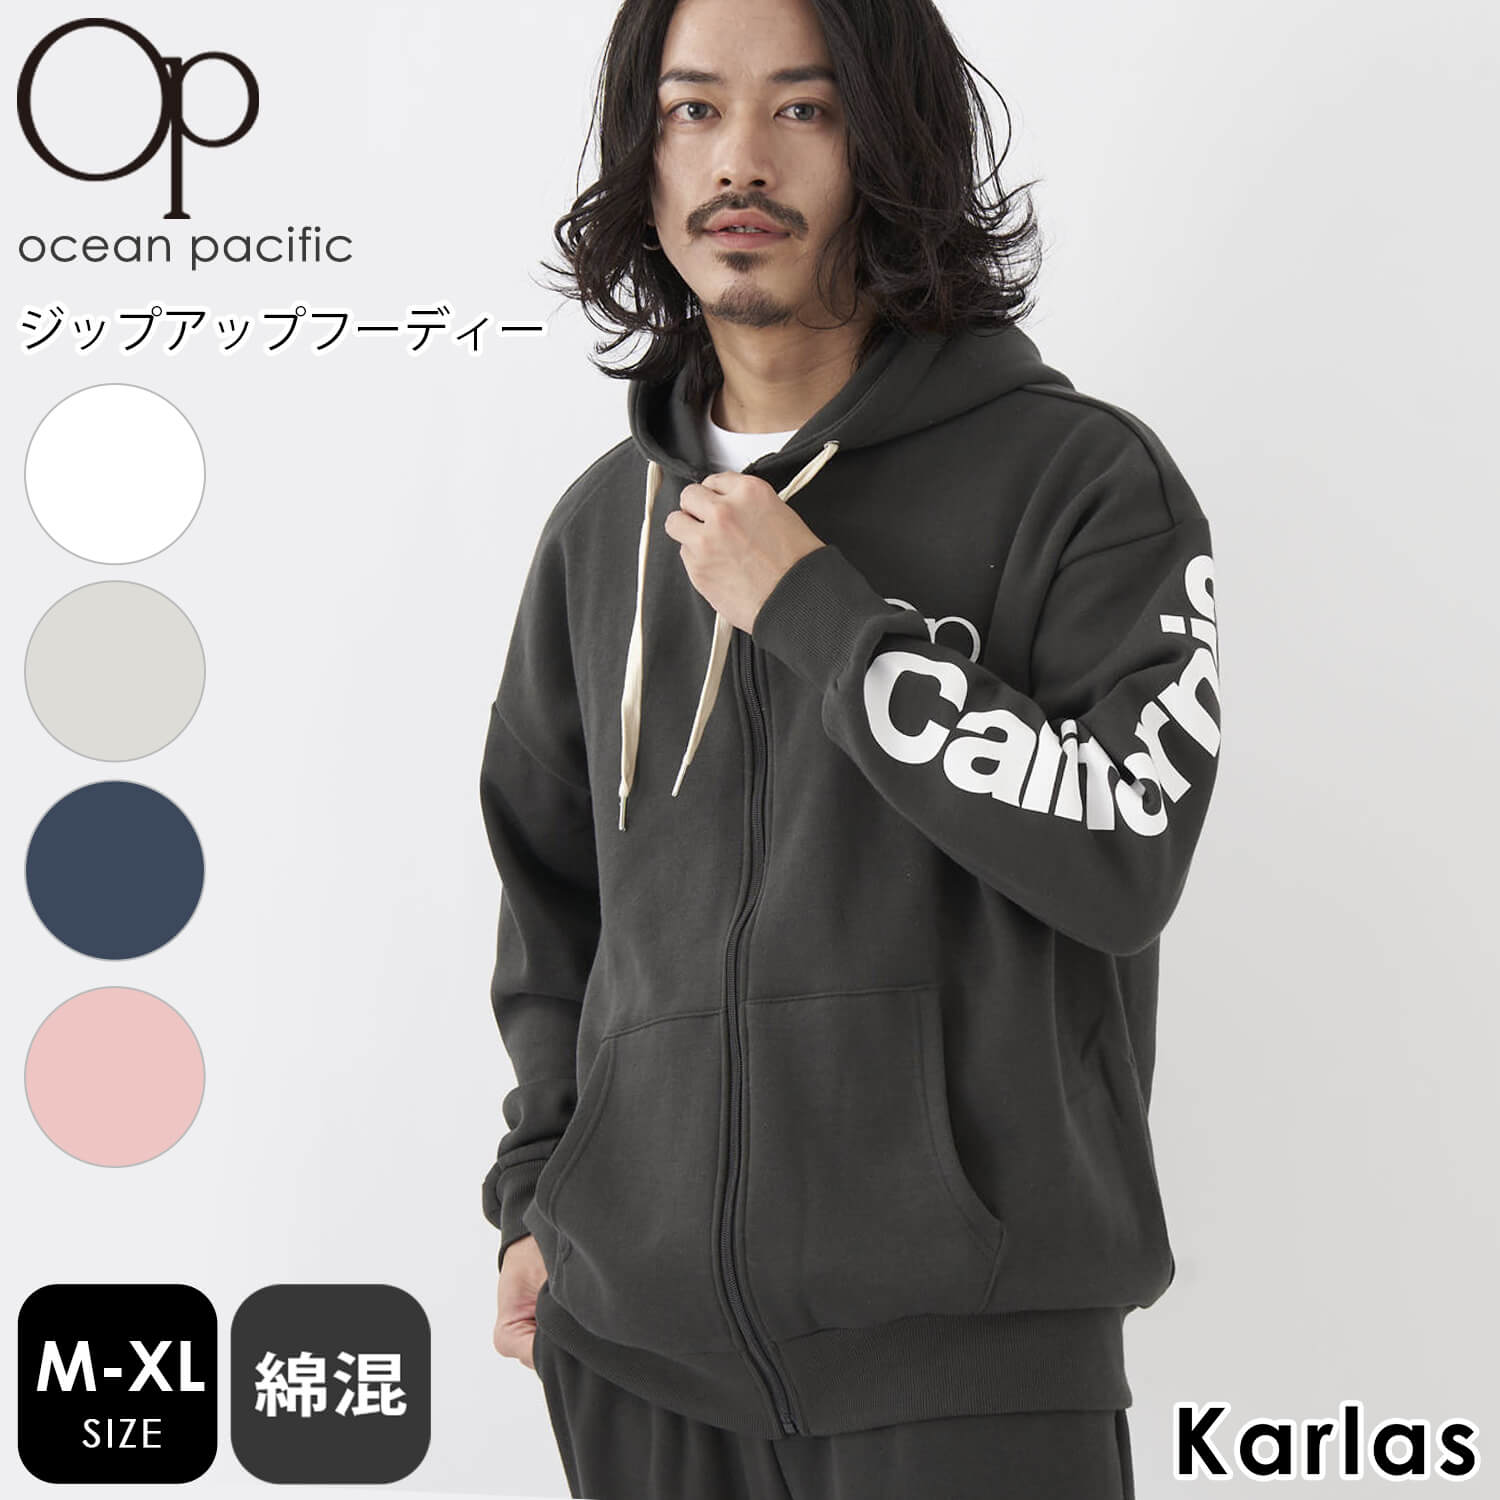 6930円 OCEAN PACIFIC オーシャンパシフィック メンズ パーカー